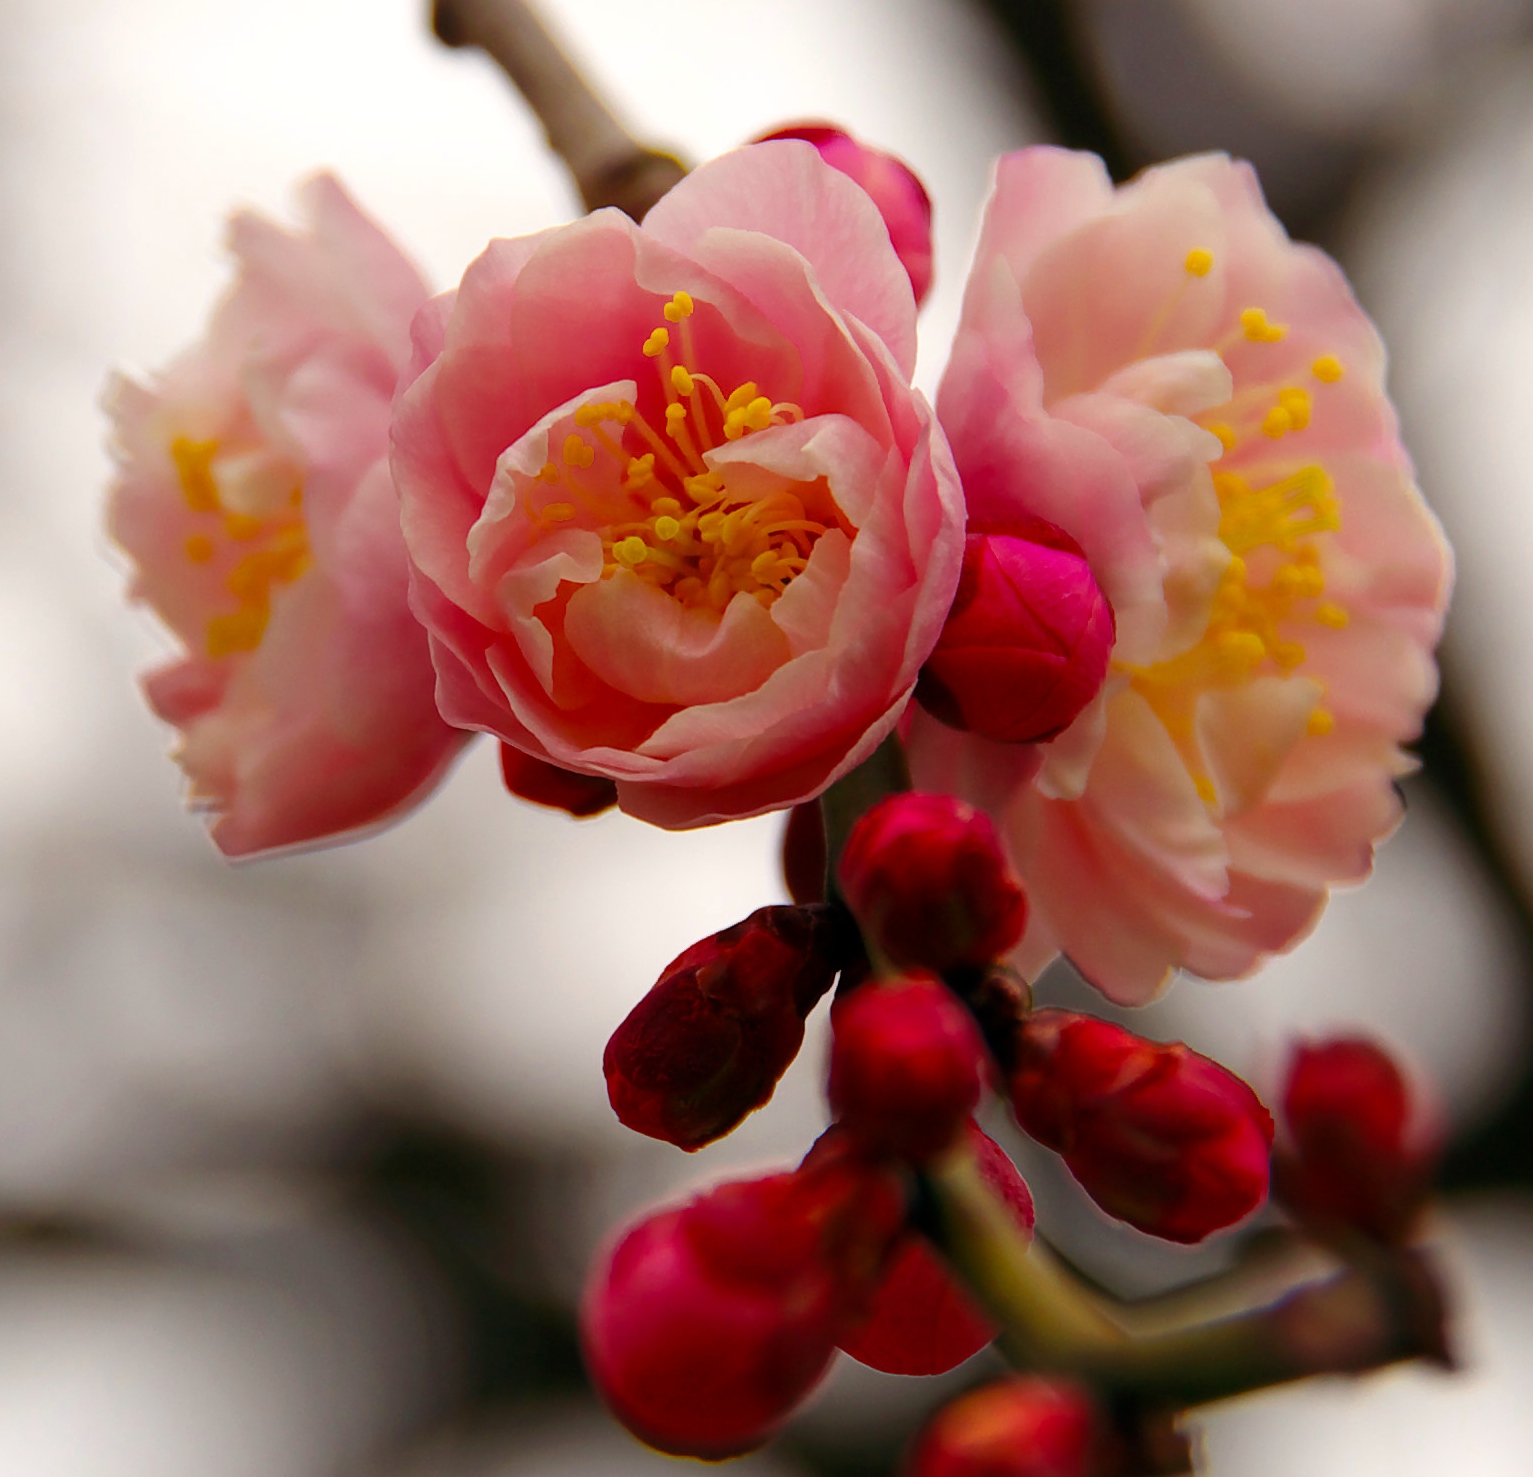  Plum blossom